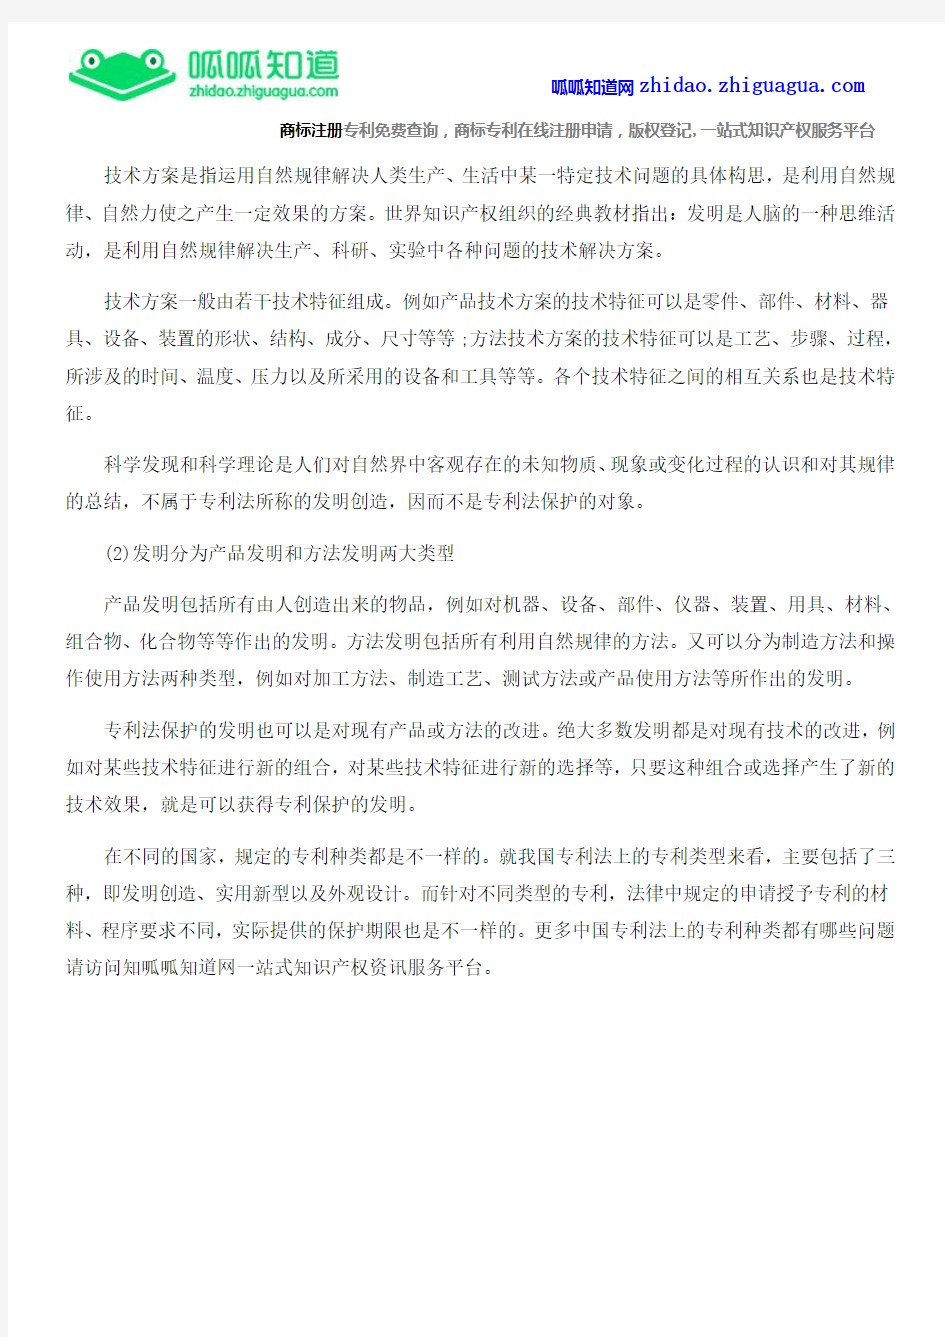 中国专利法上的专利种类都有哪些